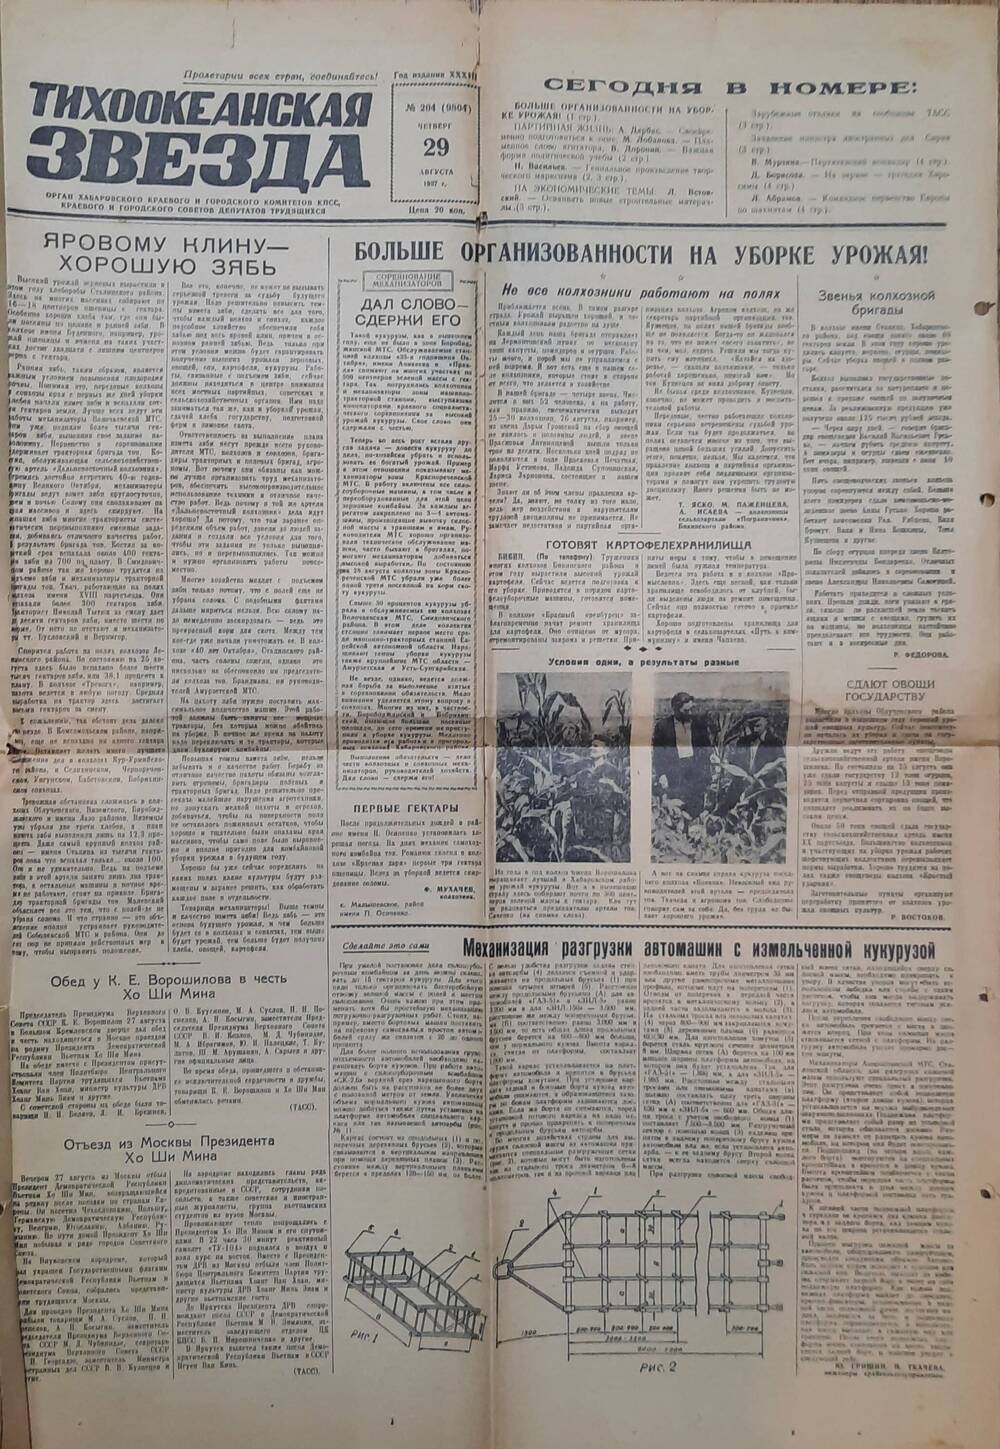 Газета Тихоокеанская звезда от 29 августа 1957 года. Статья о командире партизанского отряда Погорелове А.Е.